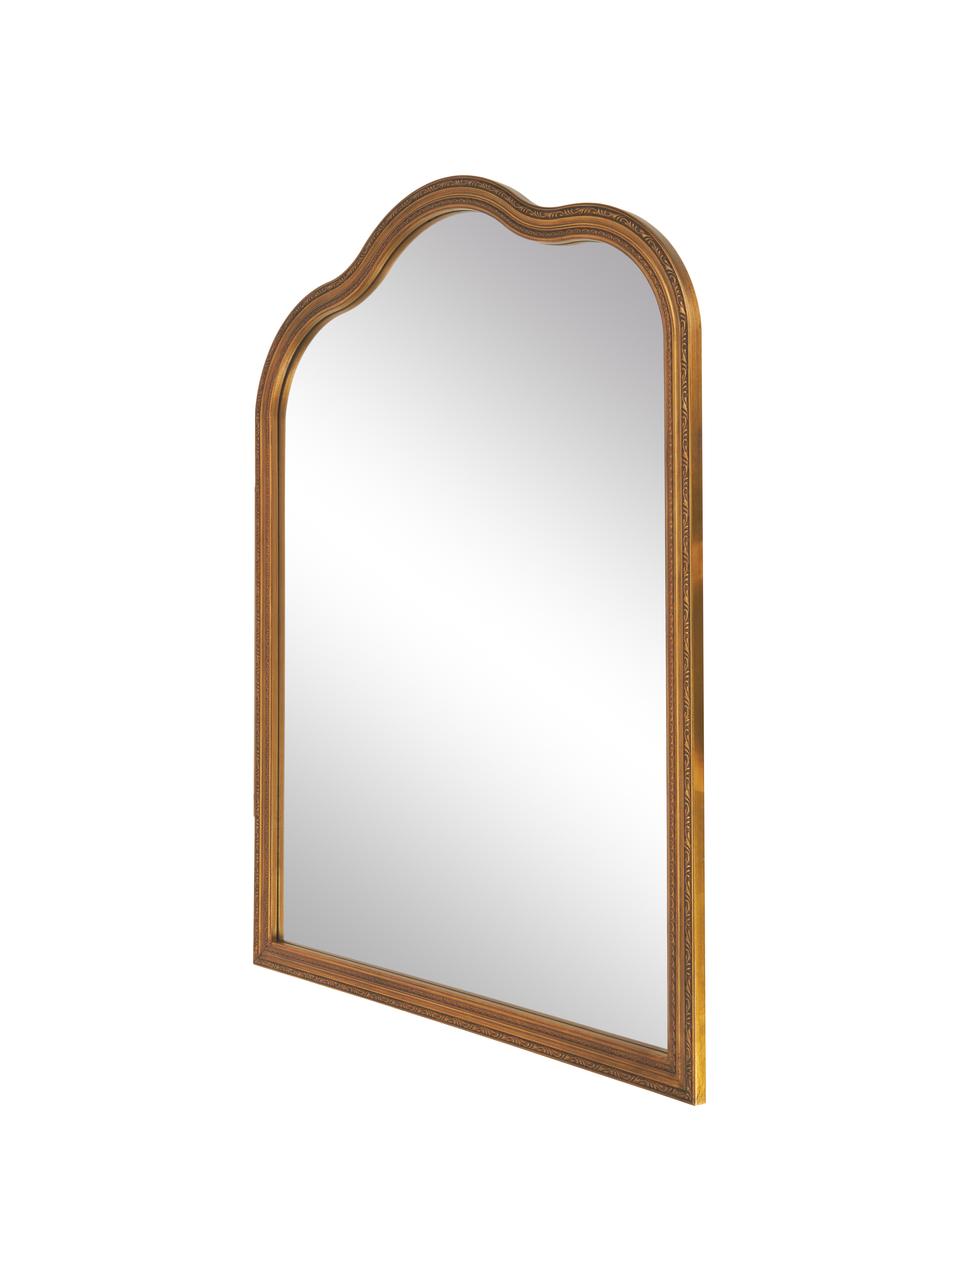 Specchio da parete barocco Muriel, Cornice: Legno massiccio certifica, Superficie: vetro a specchio, Retro: metallo, pannello di fibr, Dorato, Larg. 90 x Alt. 120 cm